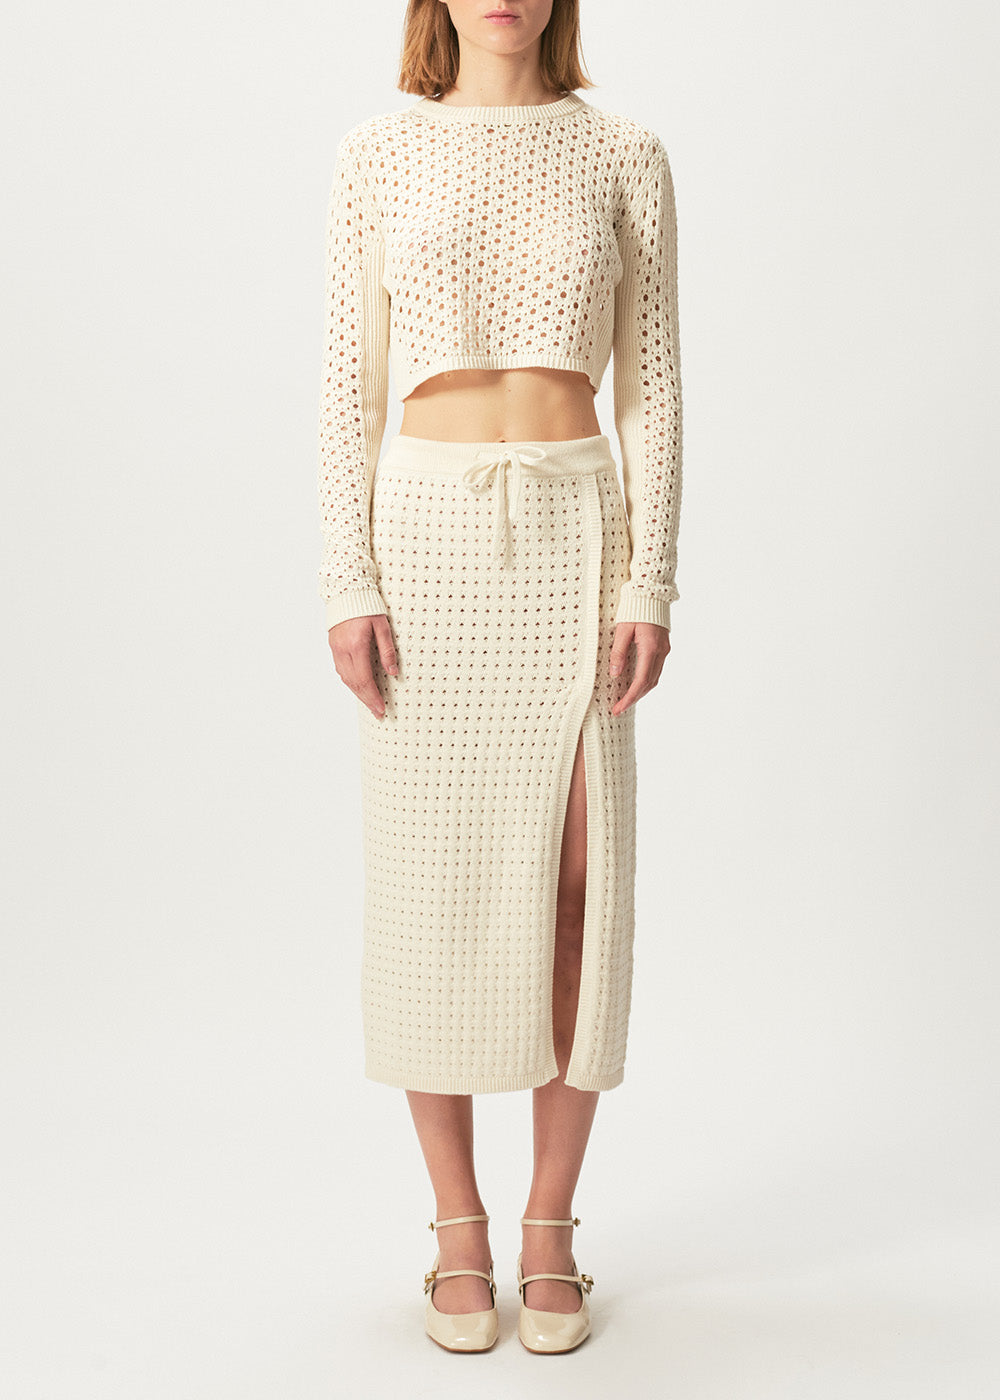 Mona Crochet Skirt - Small / Ivory